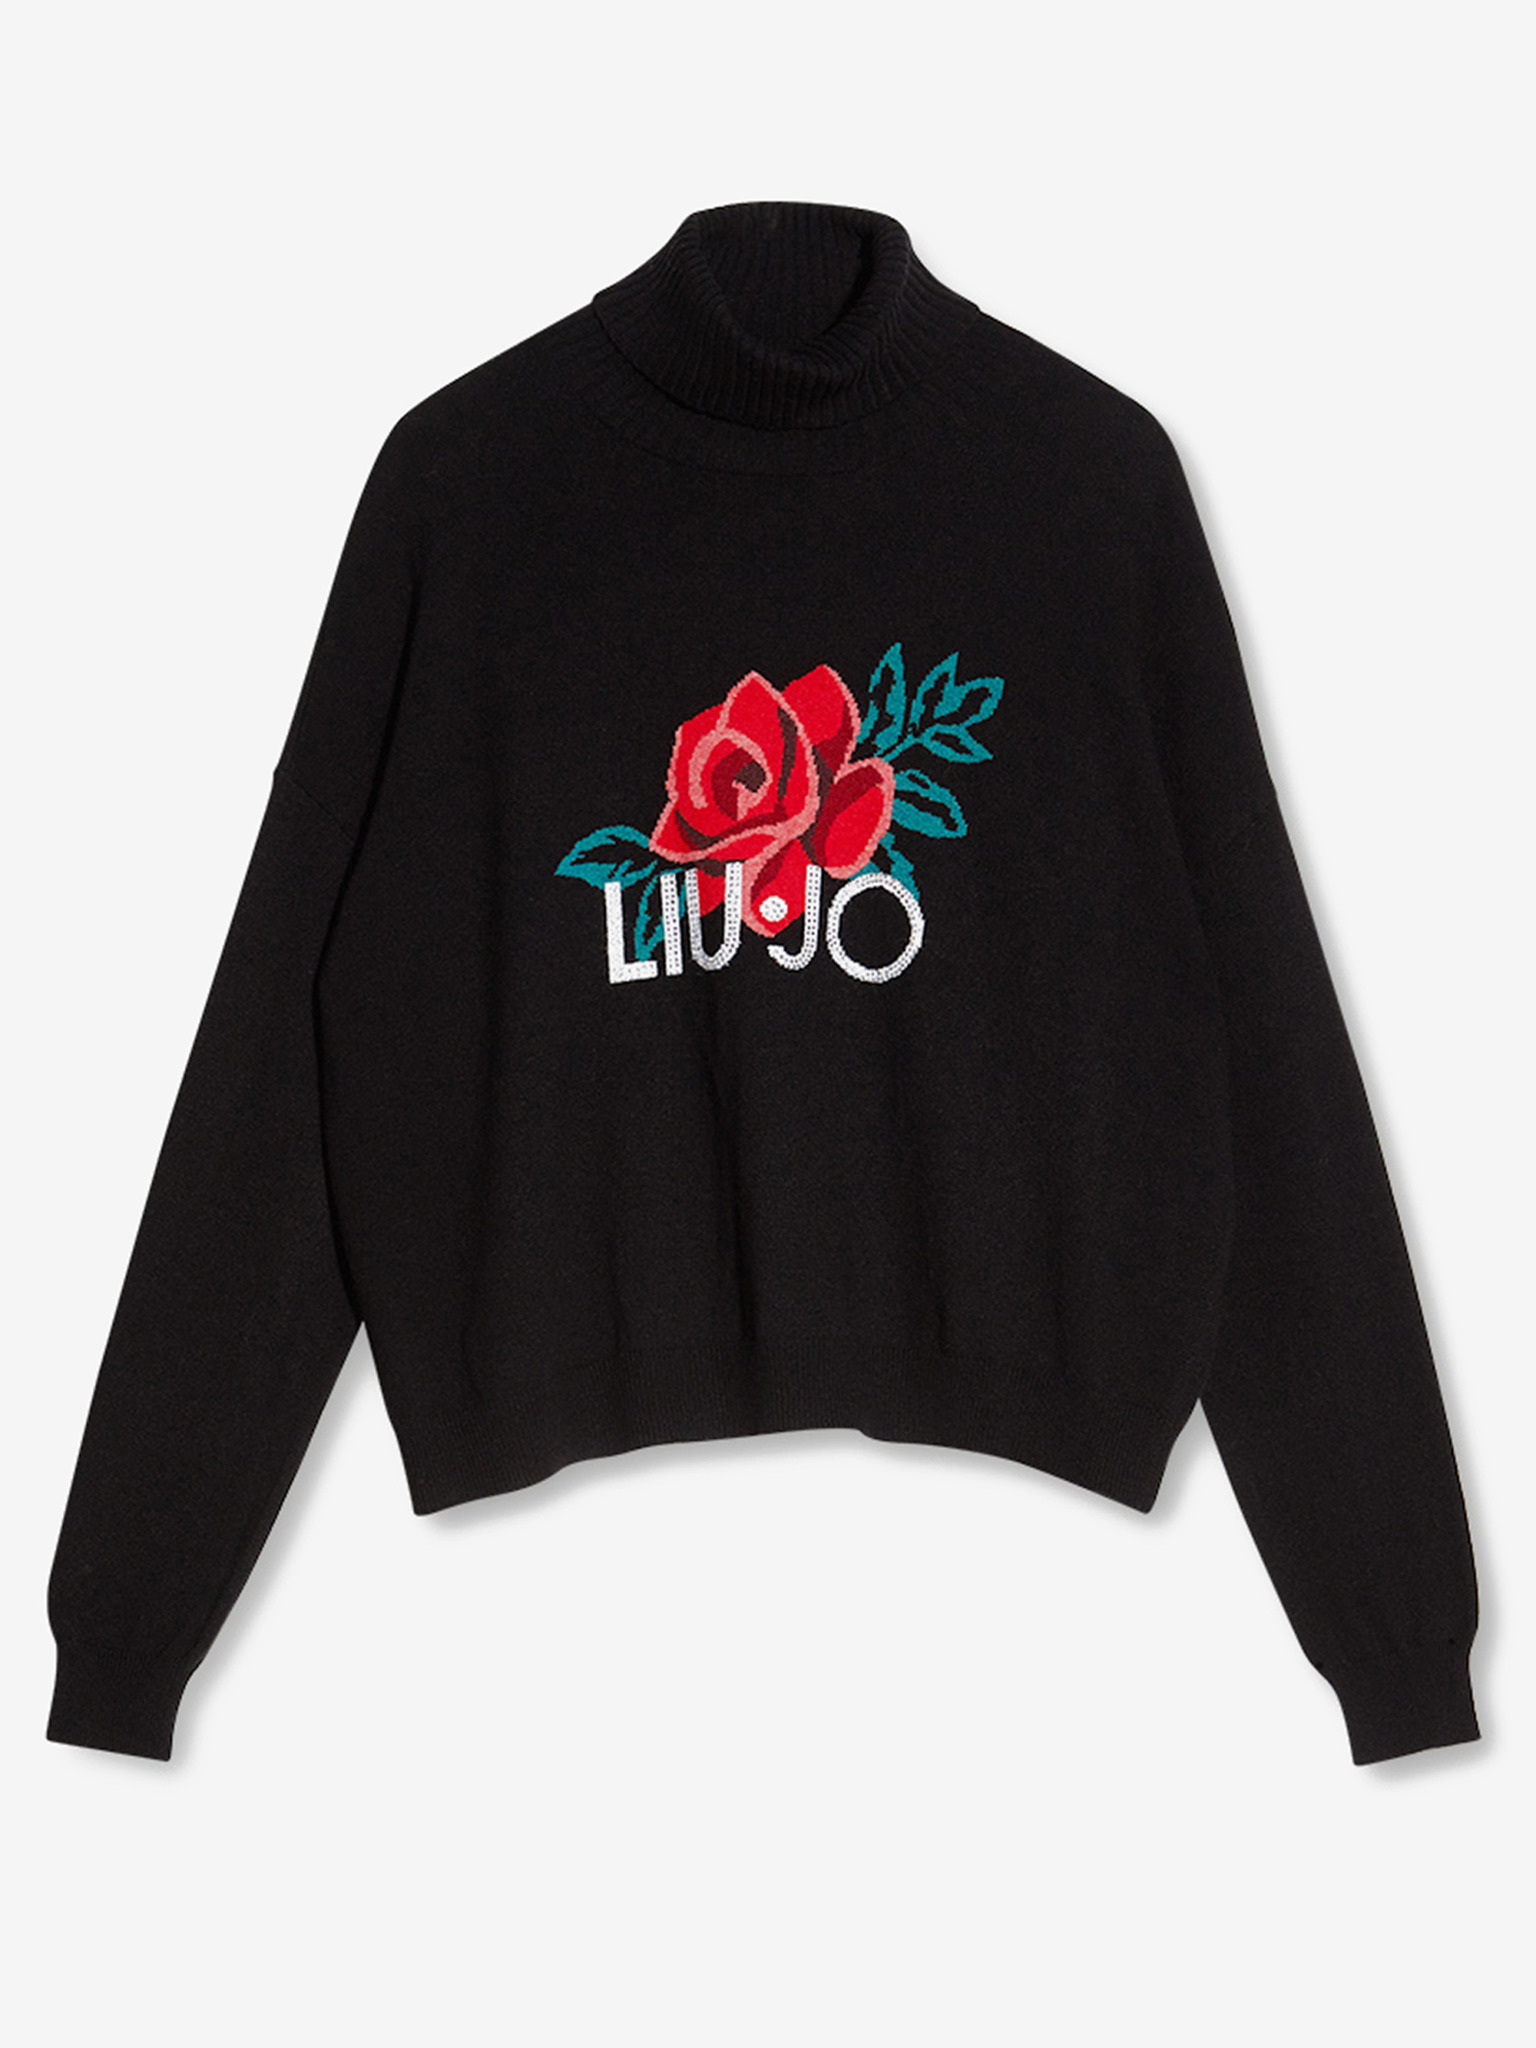 Liu Jo Women's Sweater - Black - Sweaters